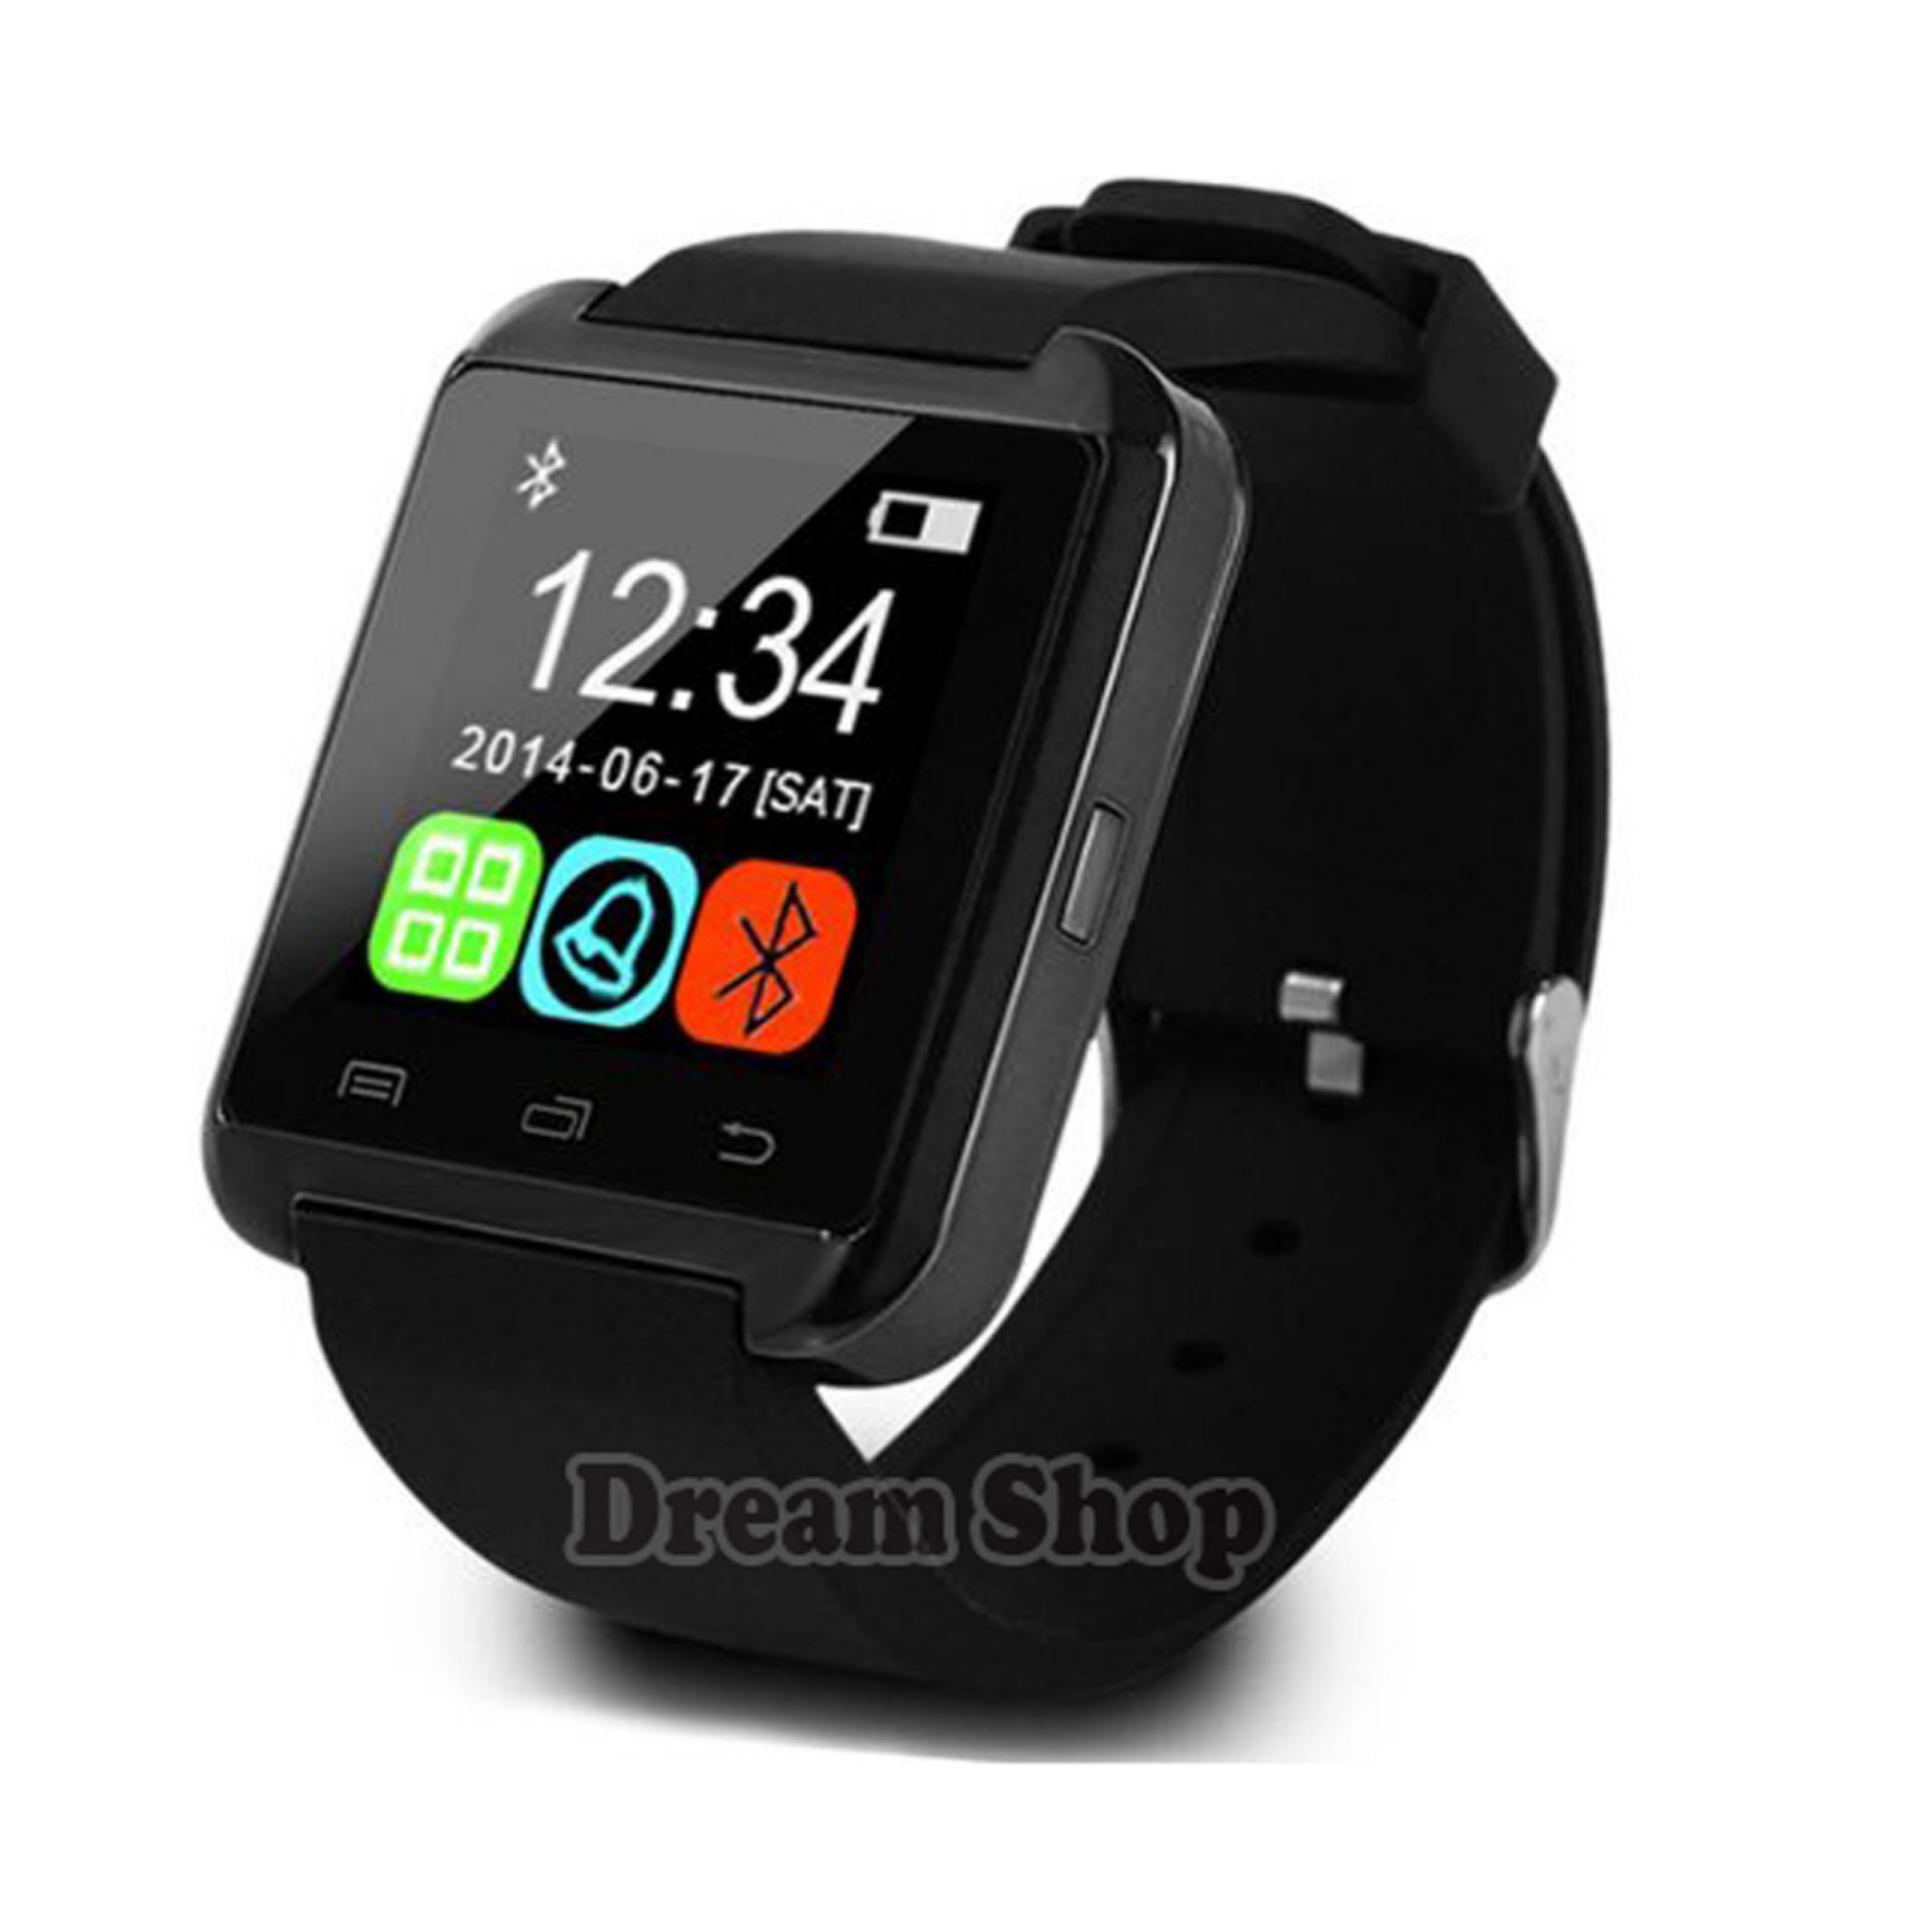 Dream Shop | Smartwatch U8 Android |  Jam Tangan Murah Asli Pria Dan Wanita Rubber Strap - Warna Hitam